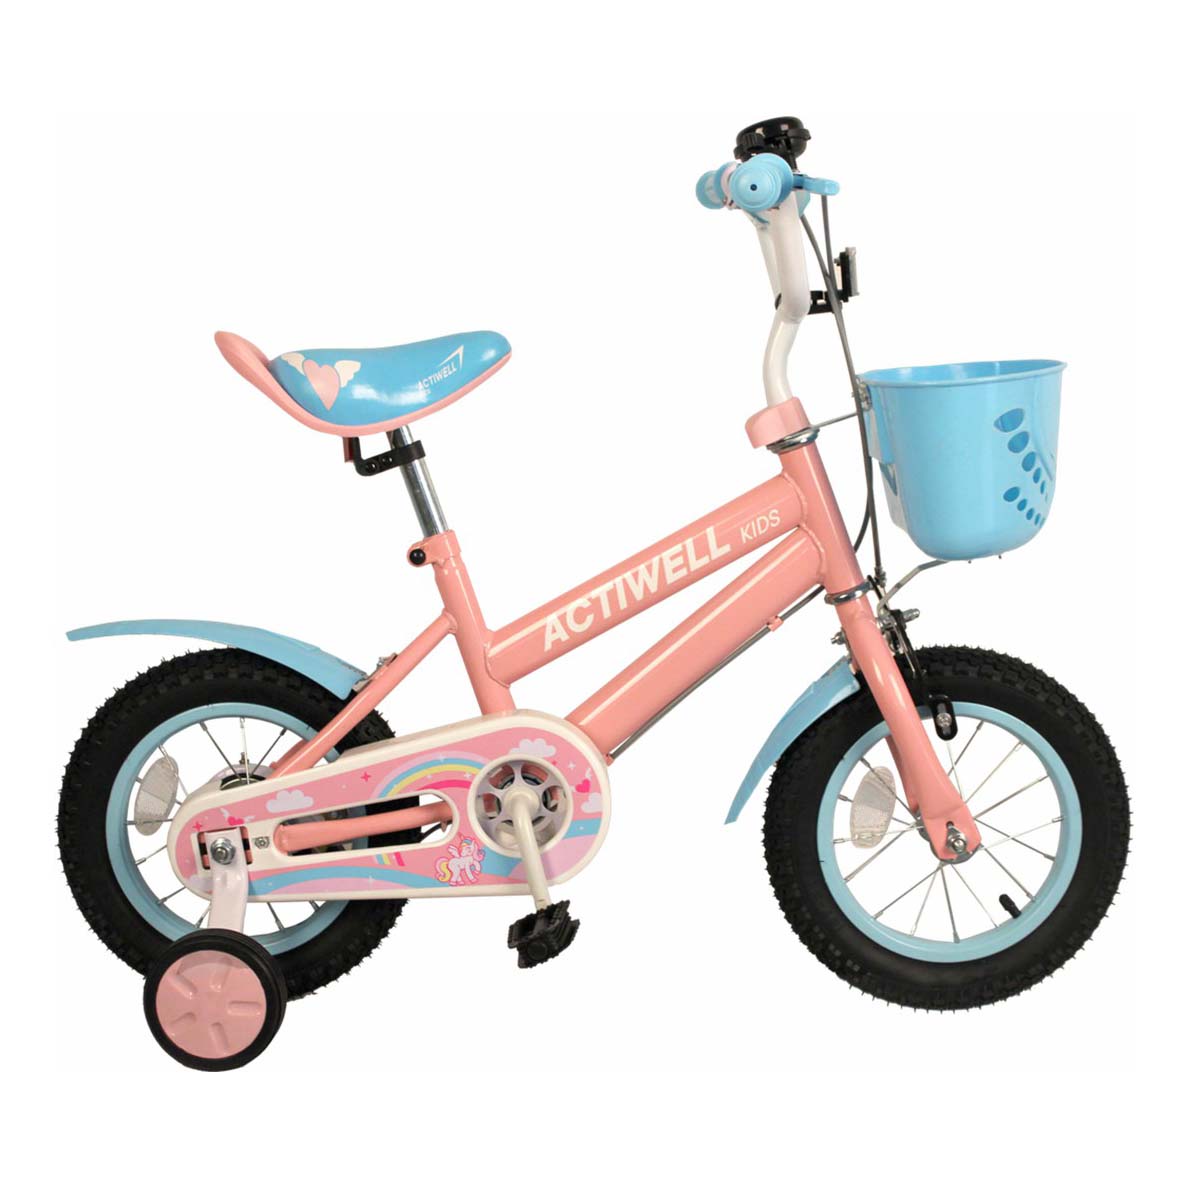 Велосипед Actiwell KID-ST12 розовый